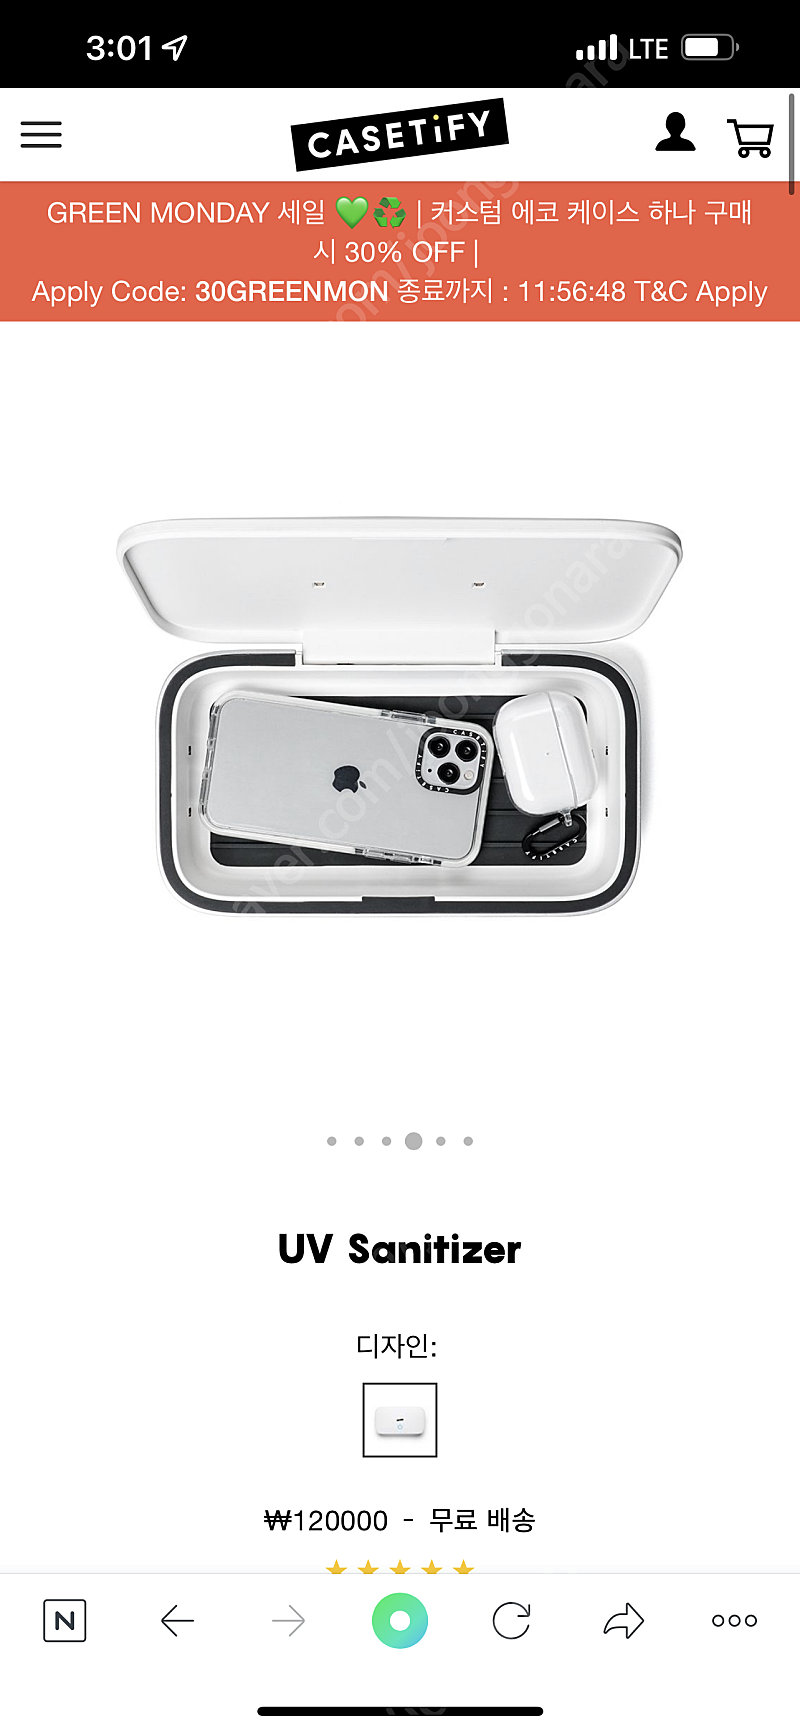 케이스티파이 UV Sanitizer